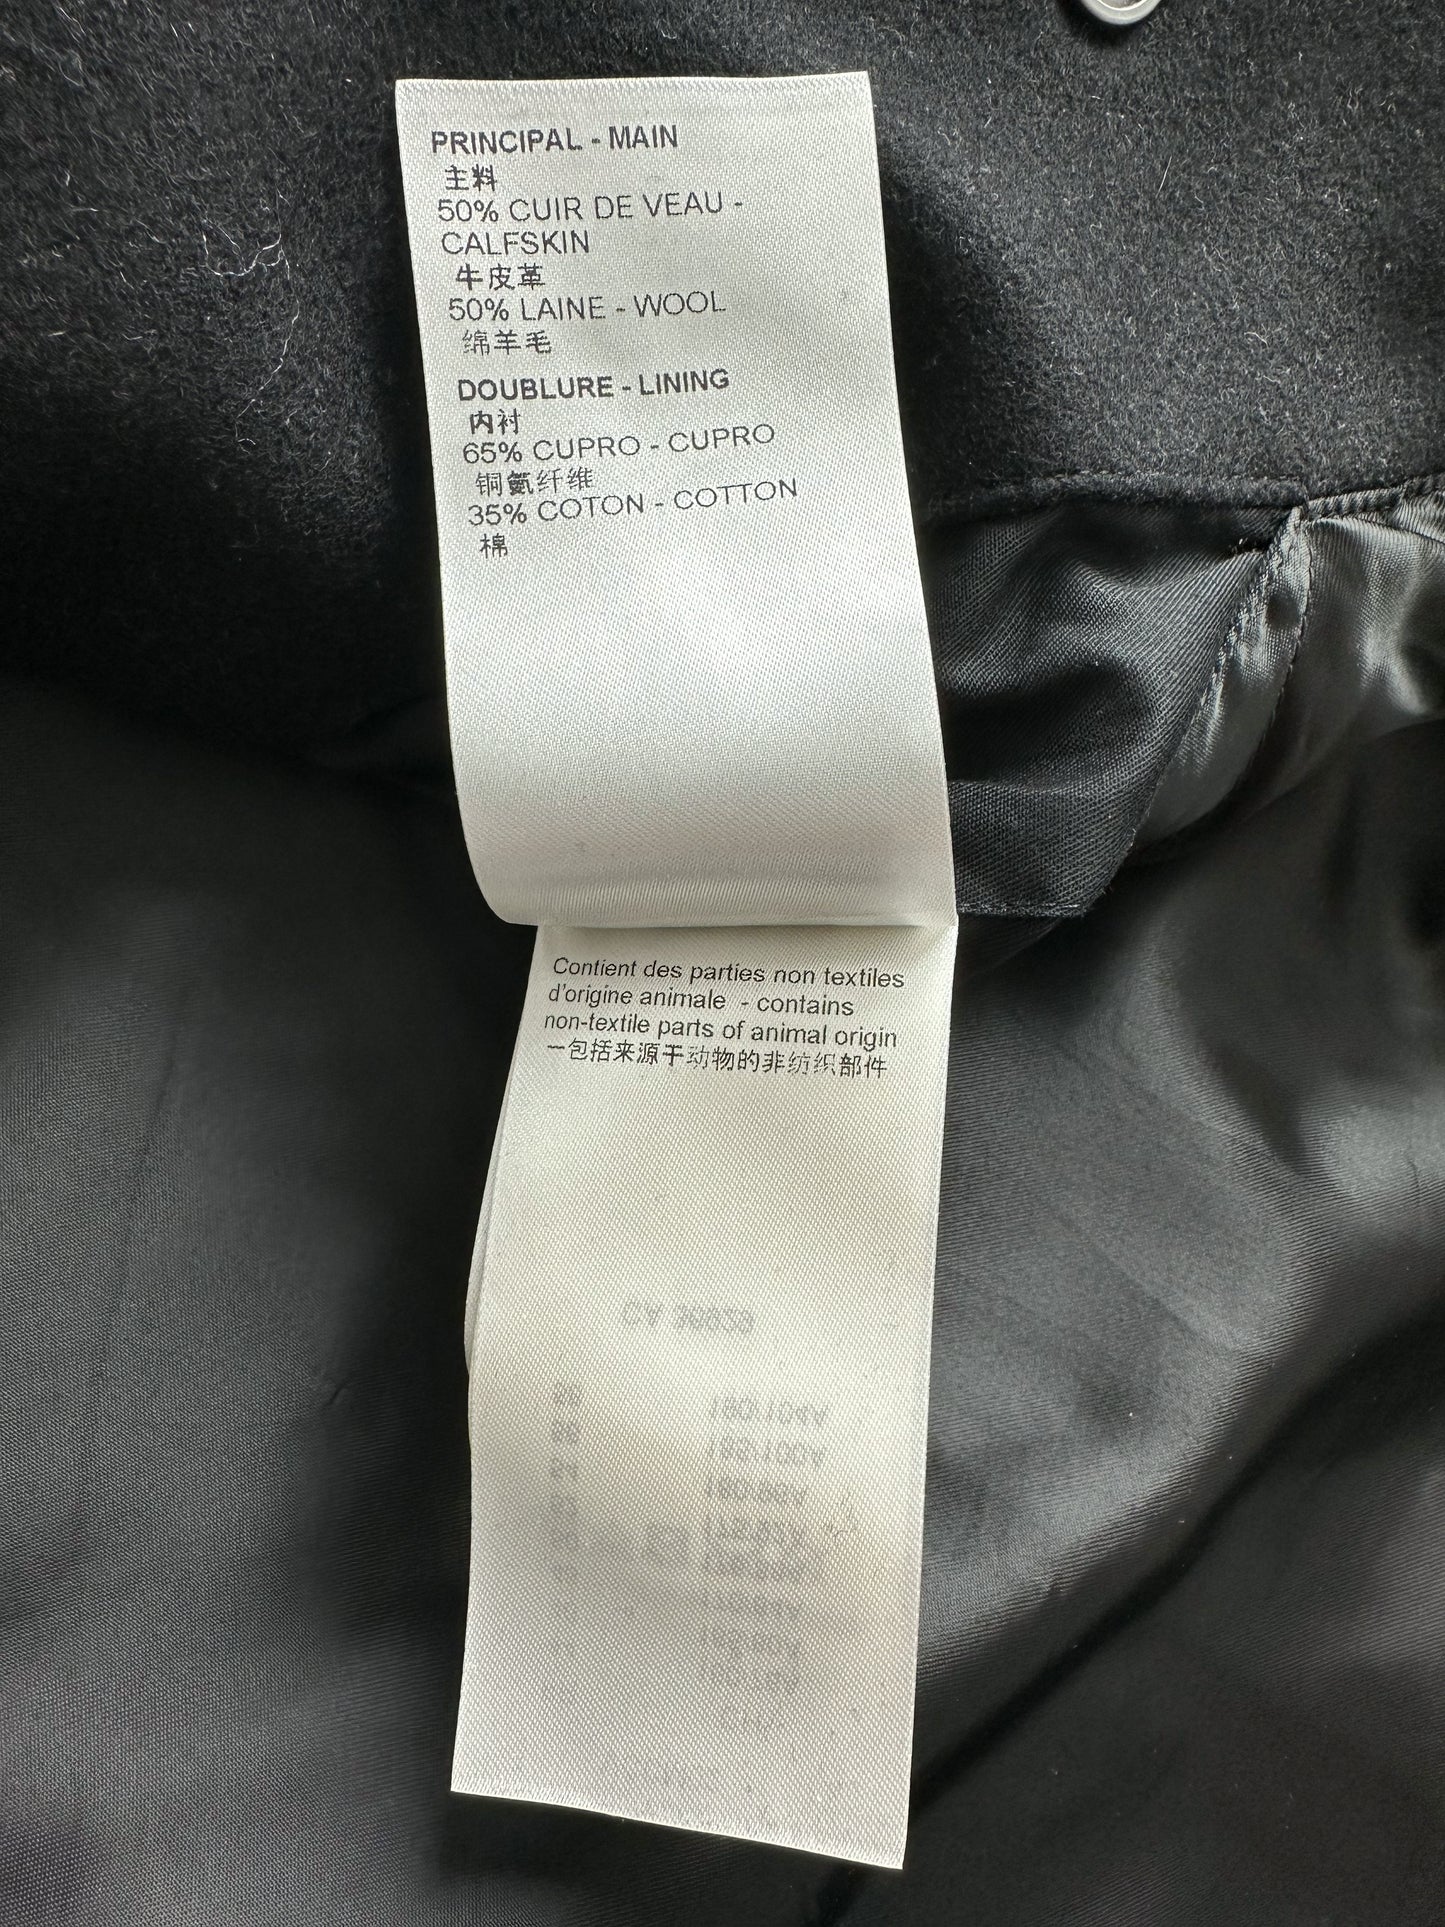 Louis Vuitton Black Wool Contrast Sleeve Varsity Jacket M Louis